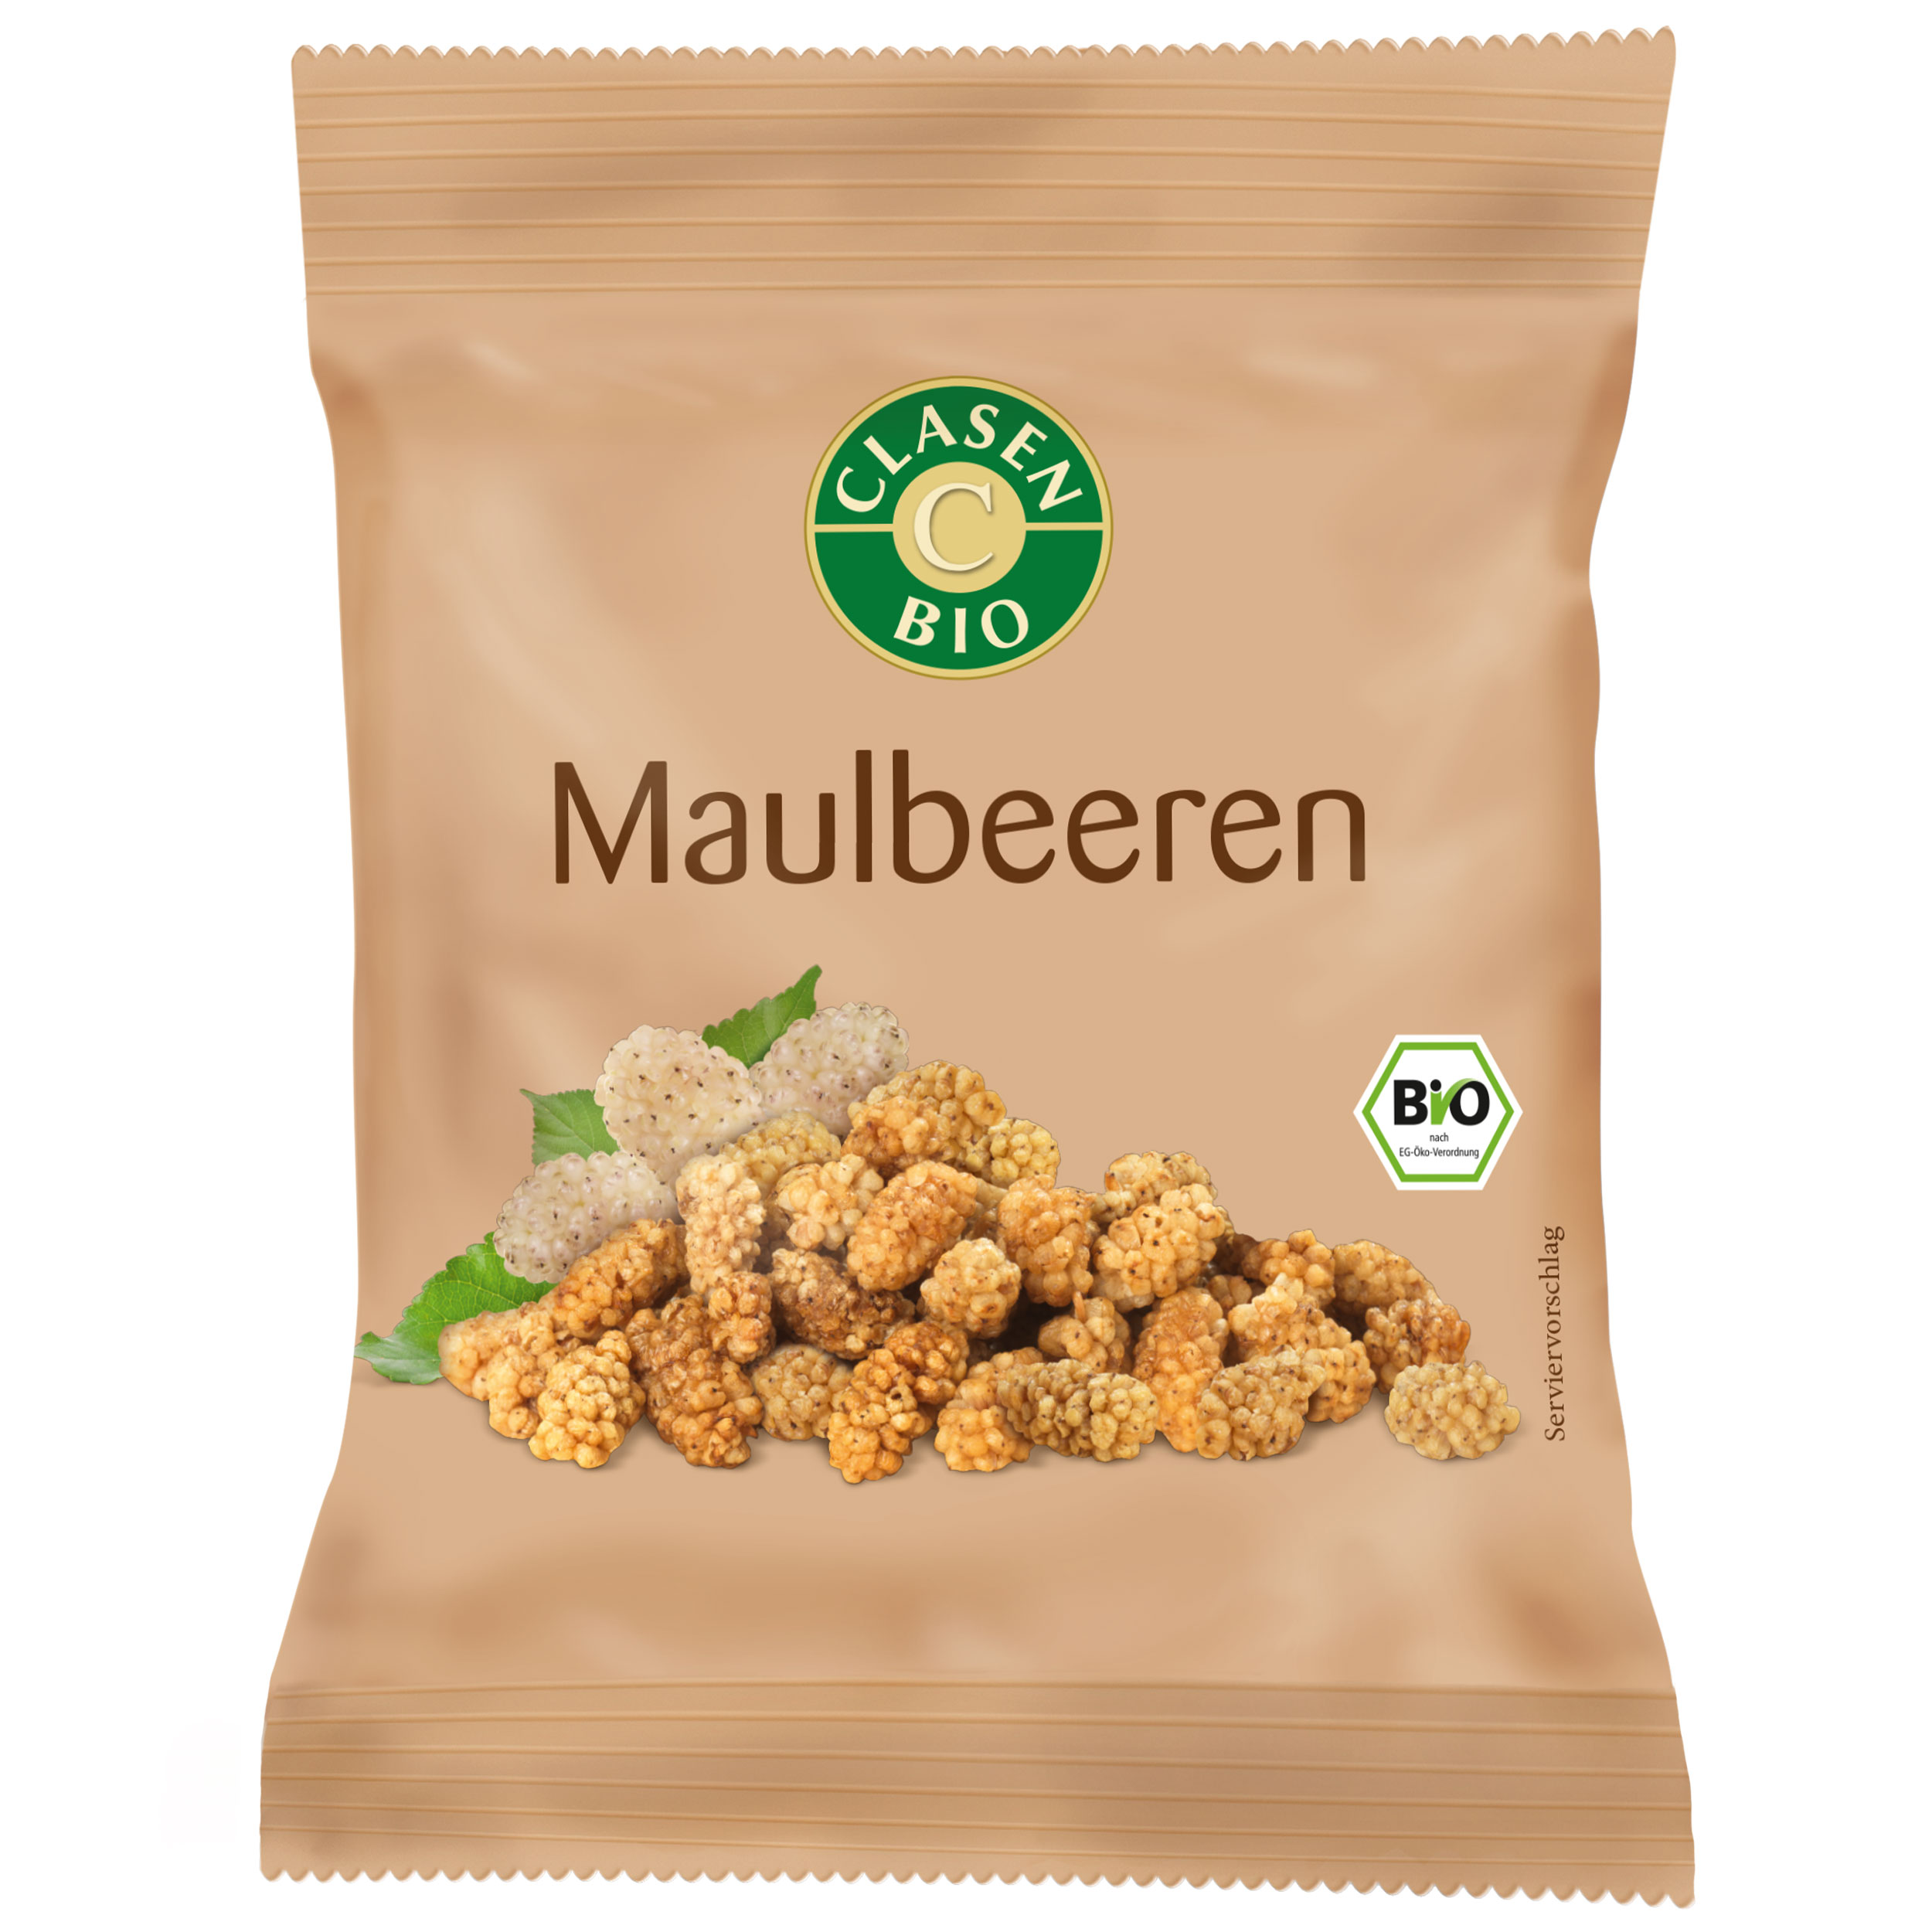 Maulbeeren Snack Pack